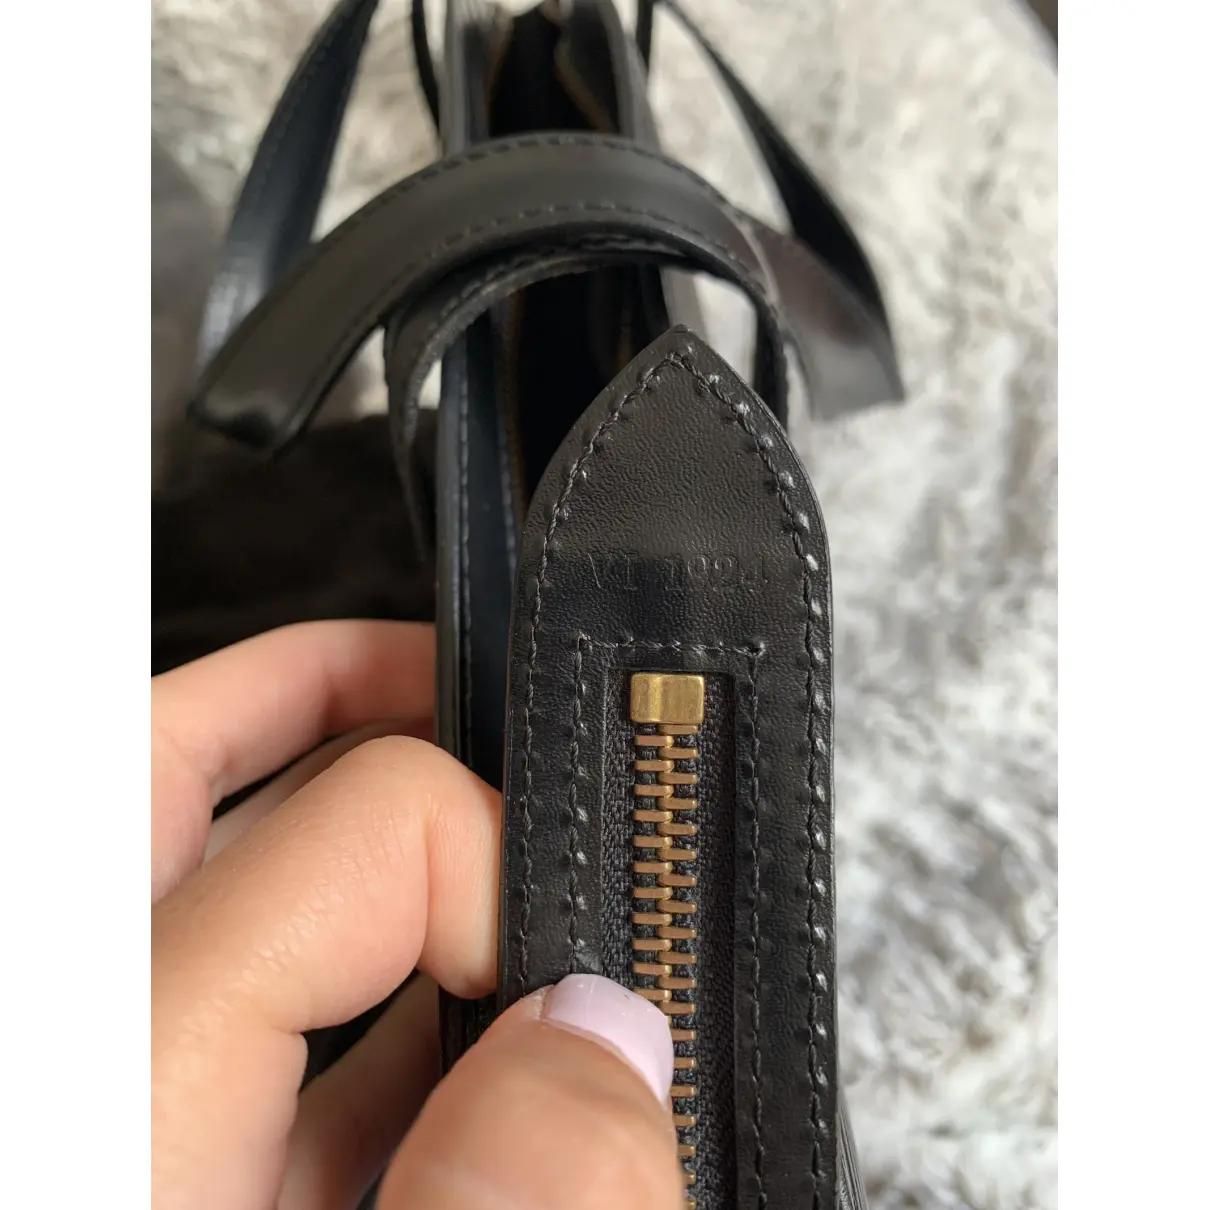 Saint Jacques leather handbag Louis Vuitton